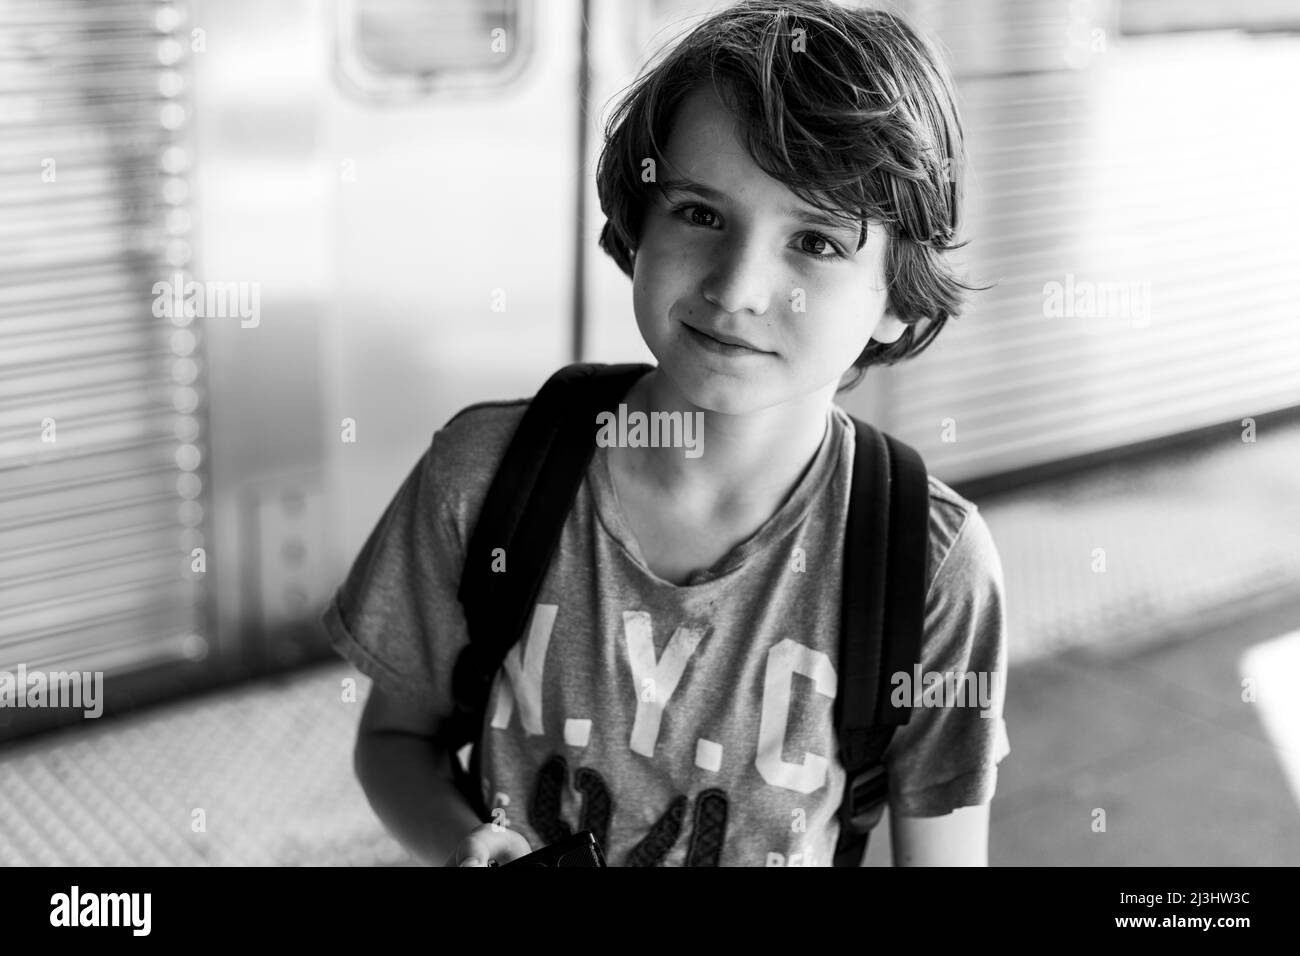 Myrtle AV, New York City, NY, USA, 12 Jahre alter kaukasischer Teenager-Junge – mit braunen Haaren und im Sommer-Outfit an der U-Bahn-Station Stockfoto